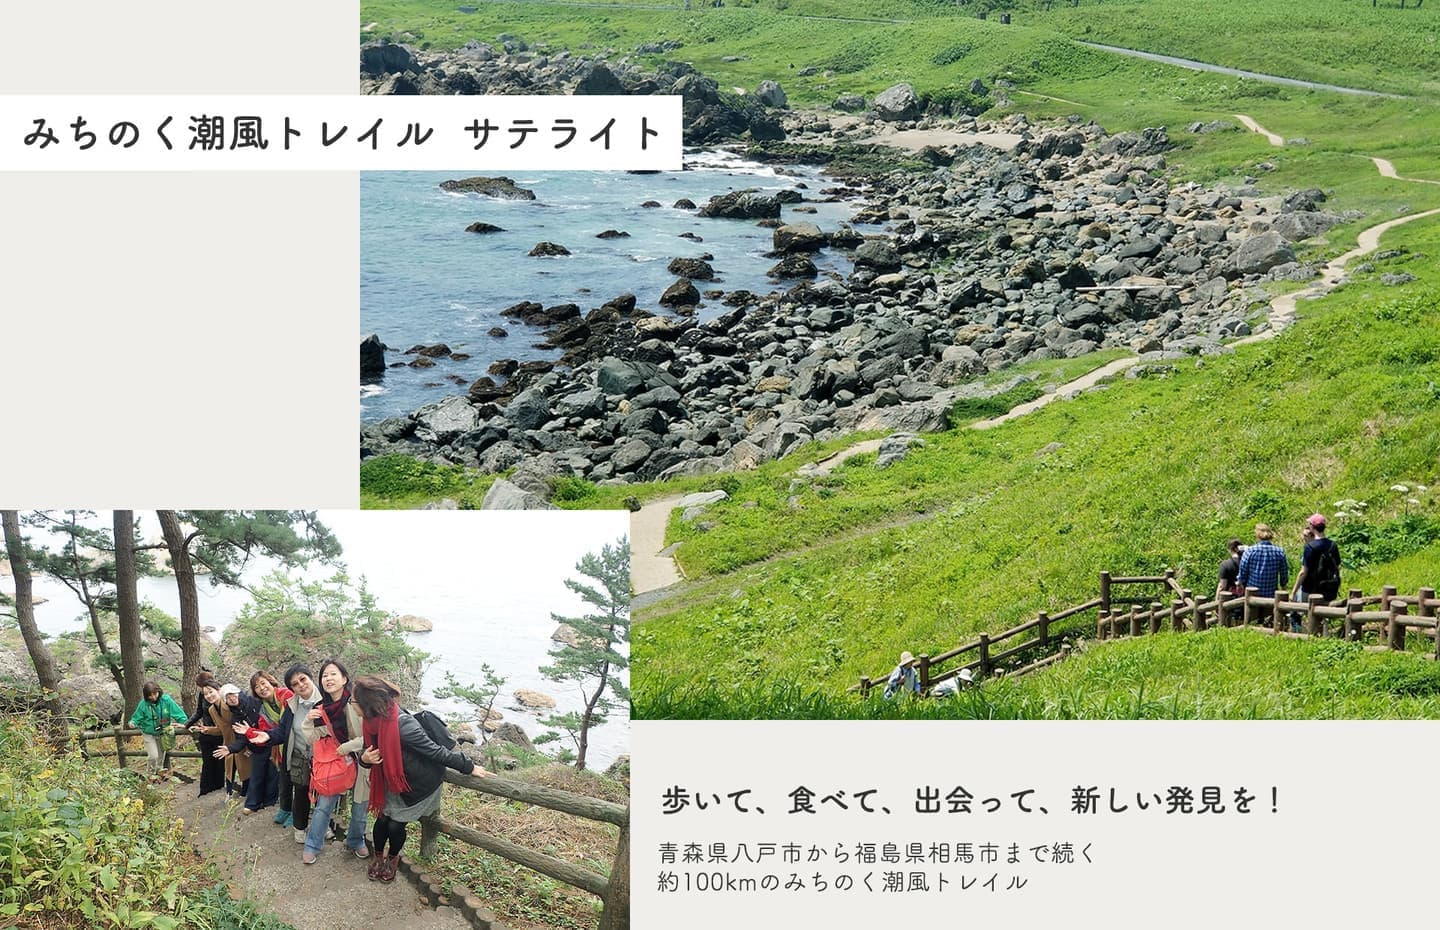 「みちのく潮風トレイル サテライト」歩いて、食べて、出会って、新しい発見を！青森県八戸市から福島県相馬市まで続く約100kmのみちのく潮風トレイル